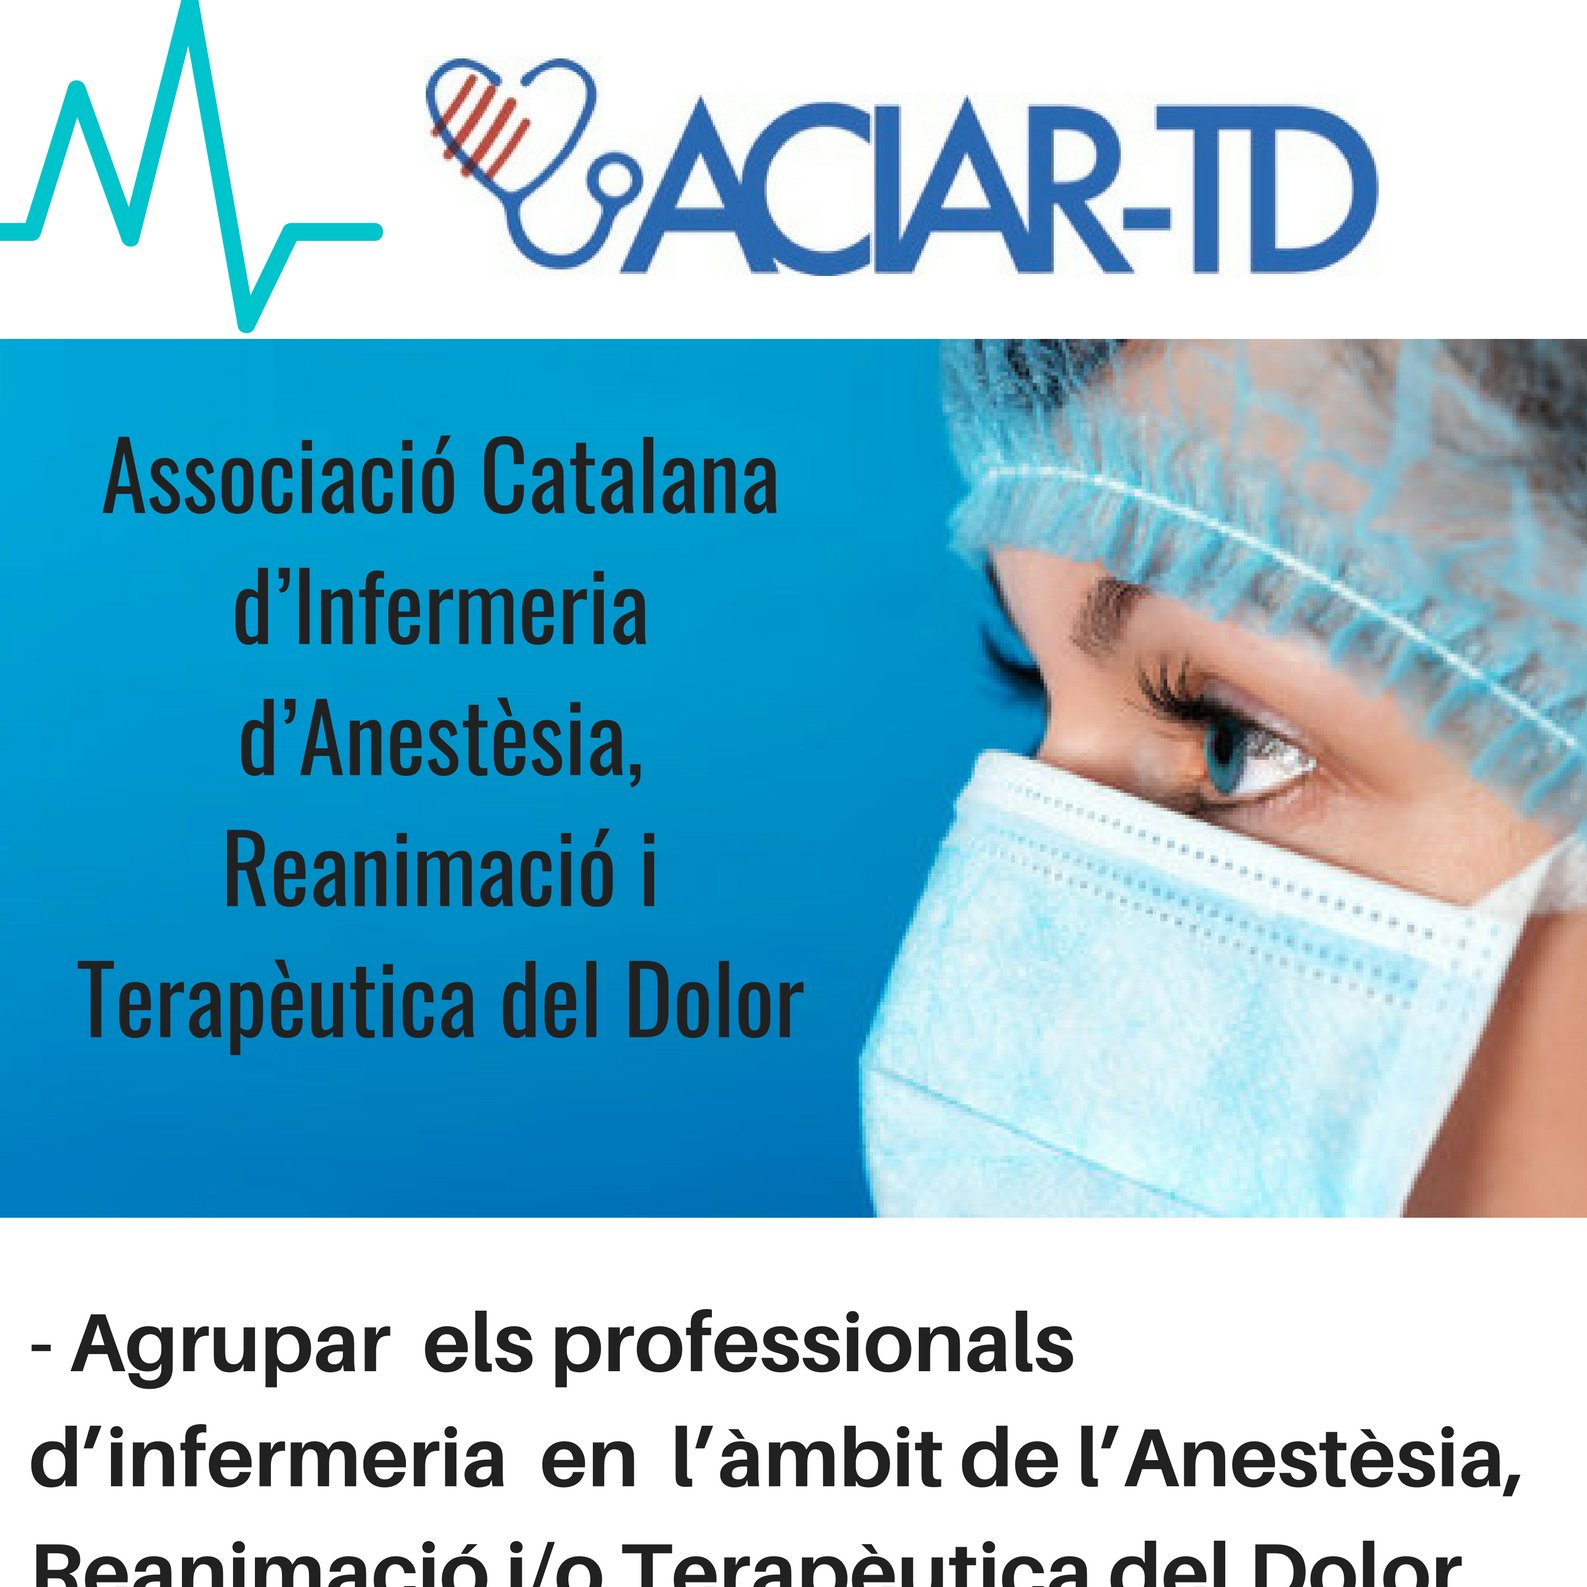 ACIAR-TD, l’Associació Catalana d’Infermeria d’Anestèsia, Reanimació i Terapèutica del Dolor

https://t.co/S2PL5jGdJt